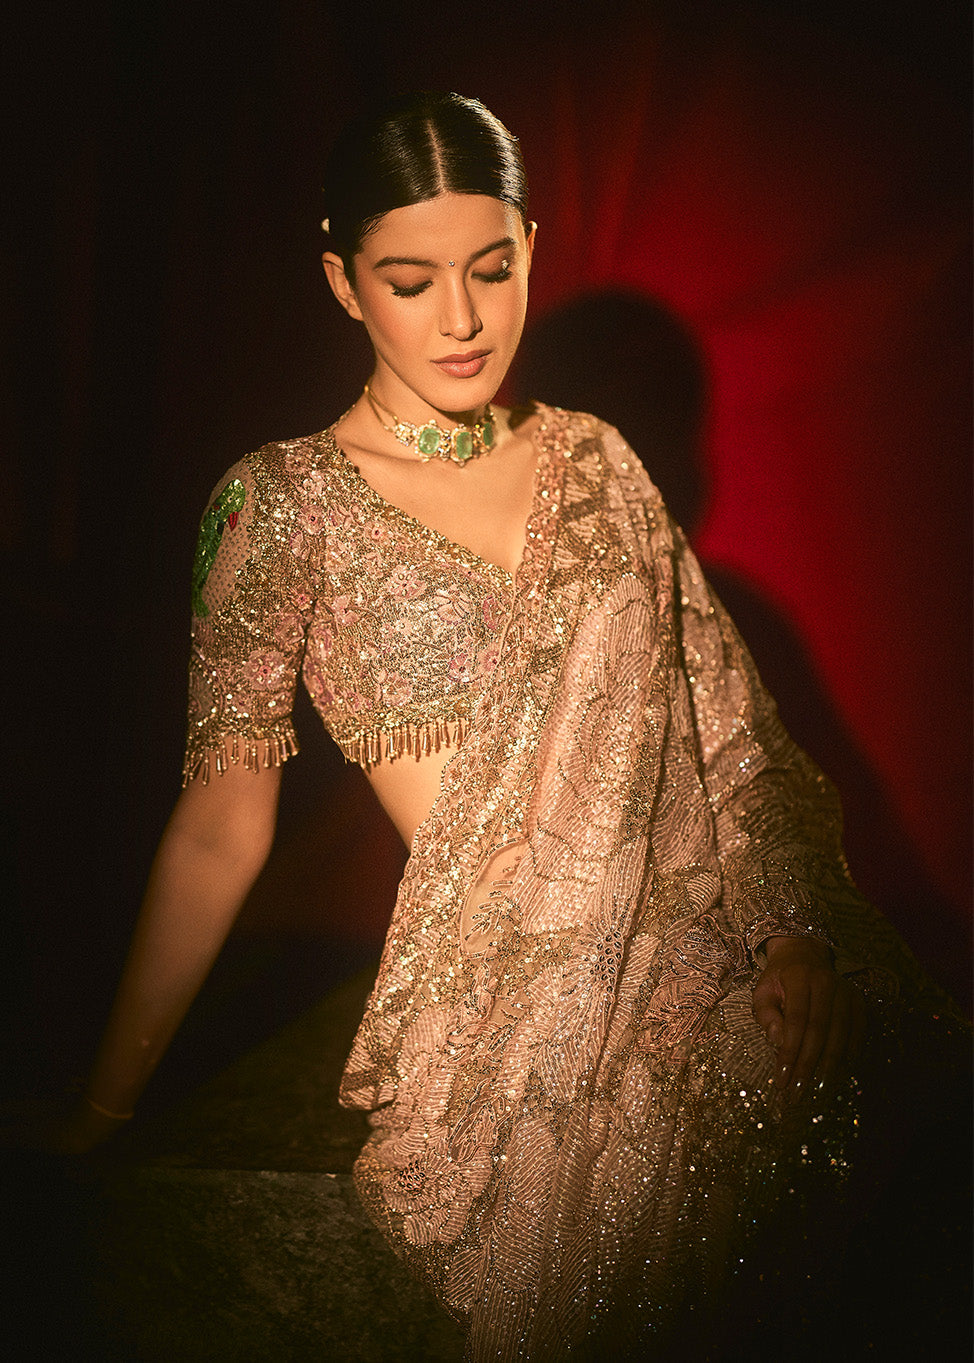 Shanaya Kapoor